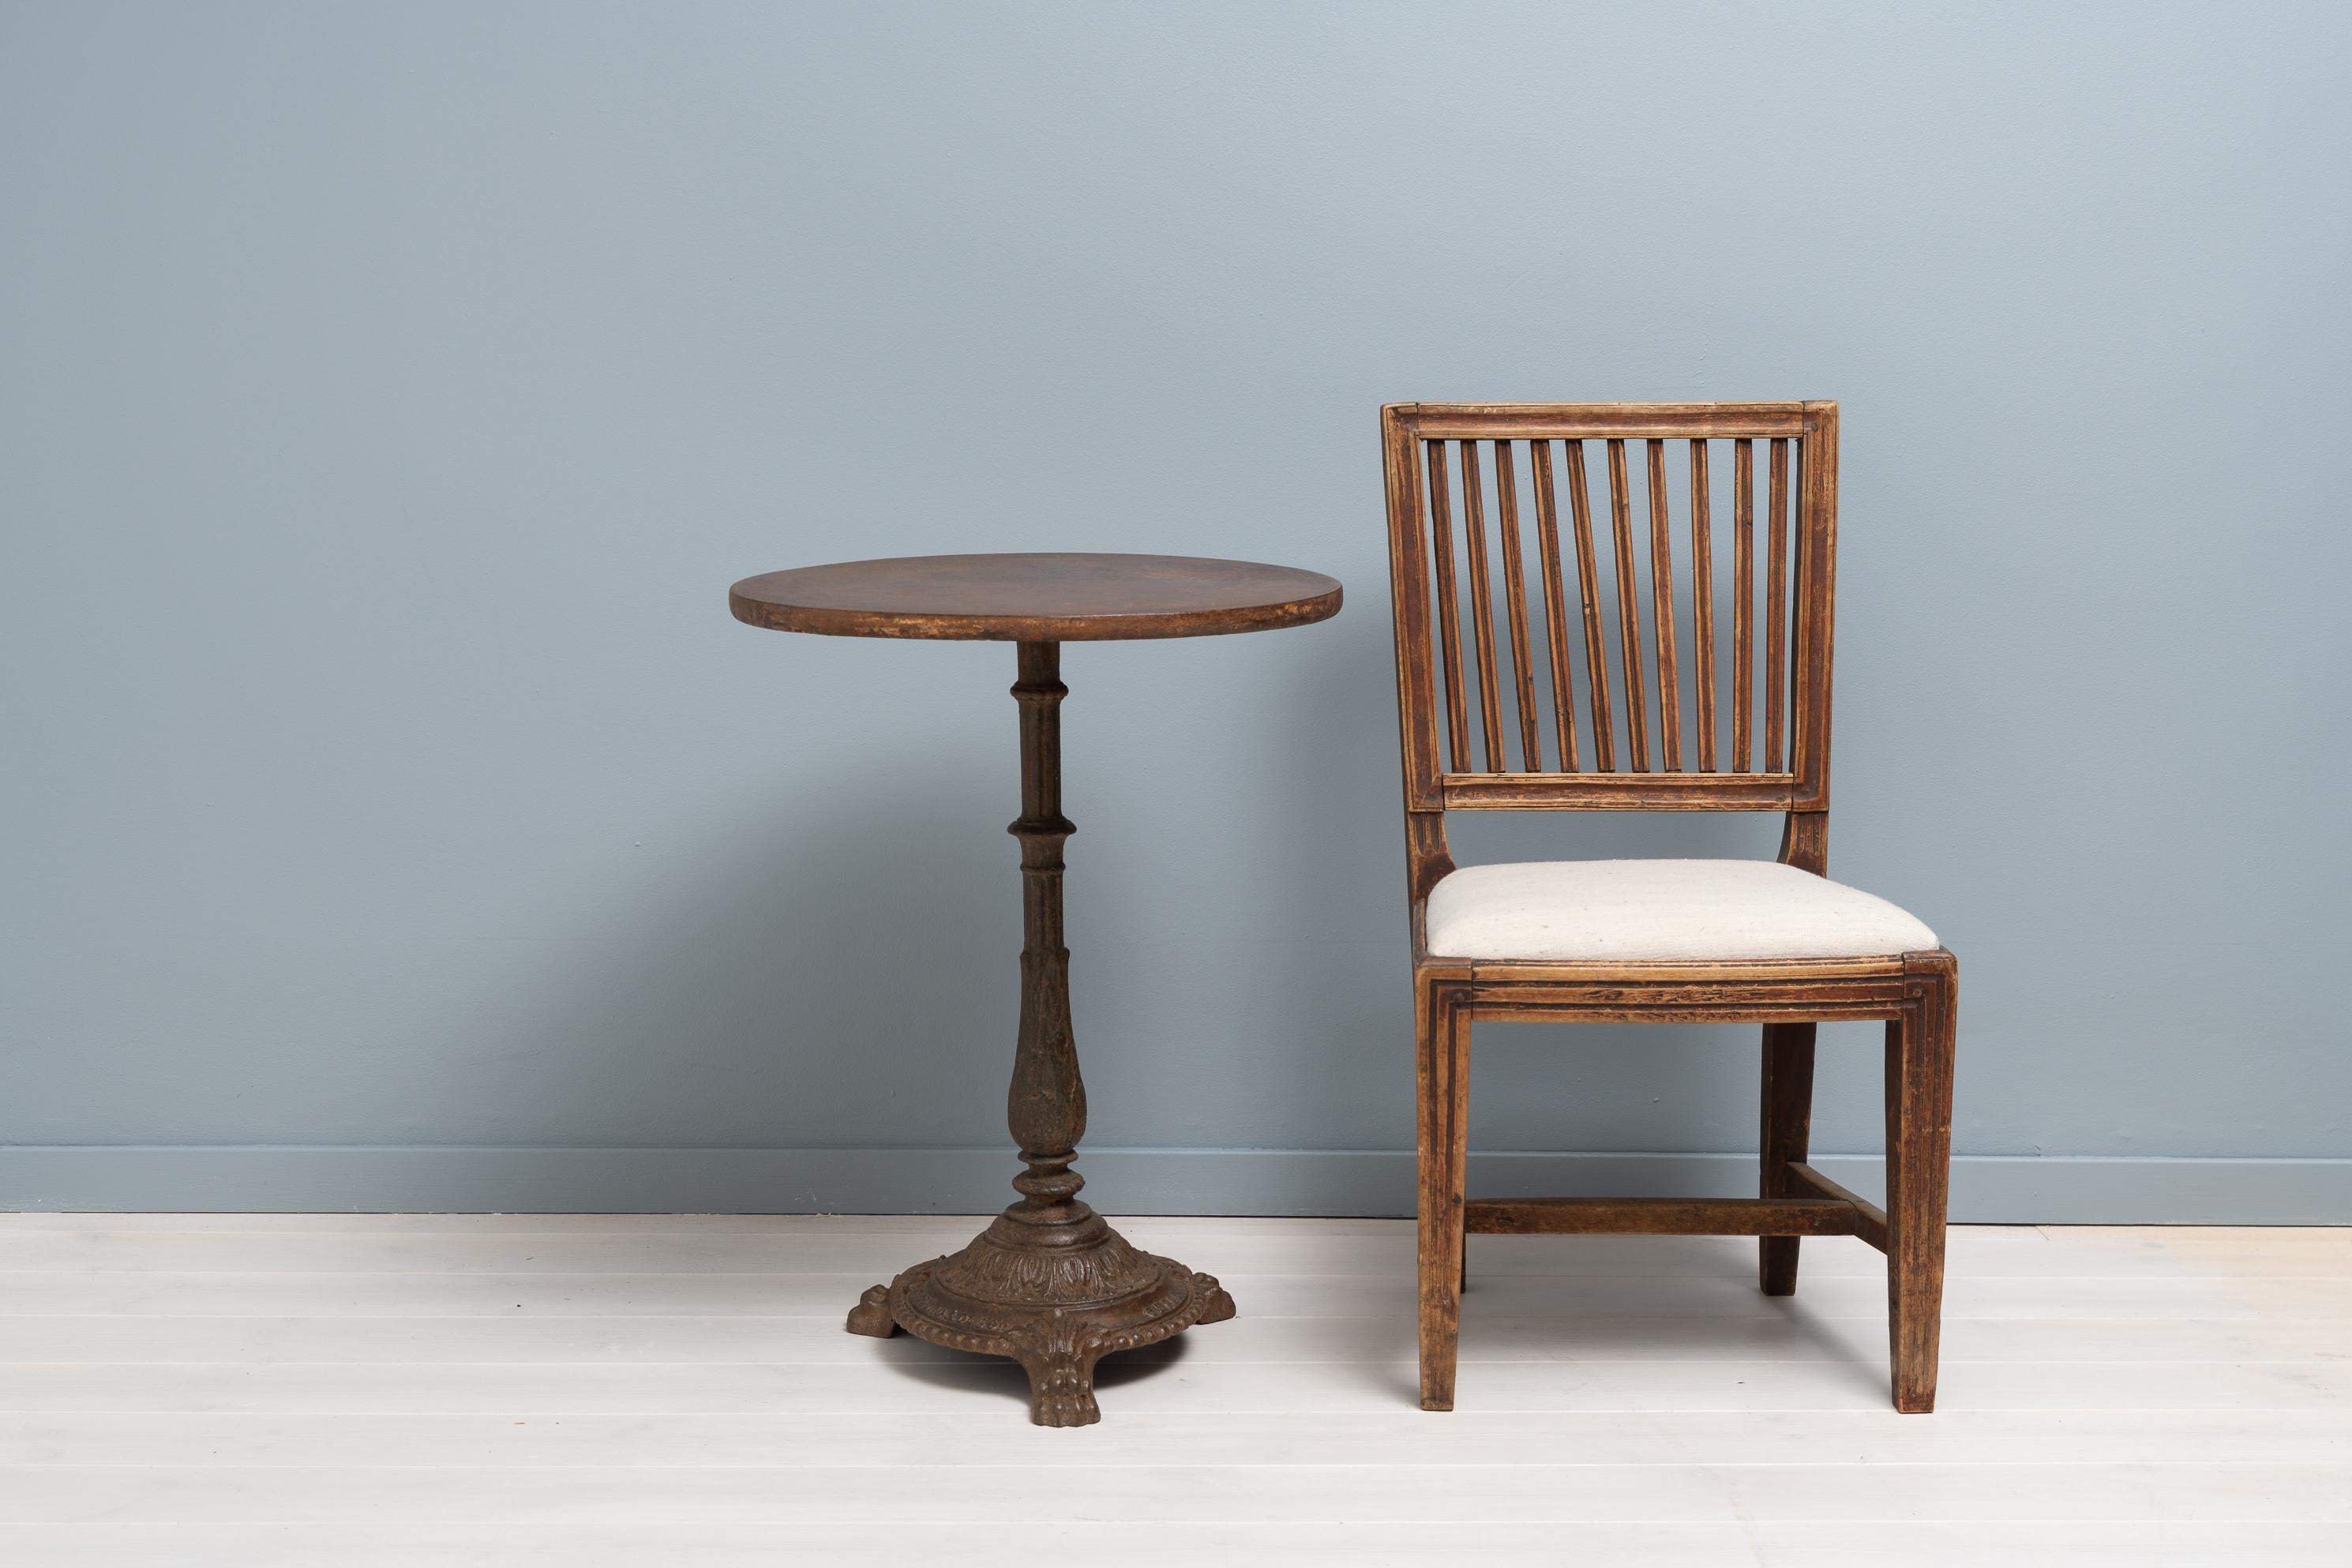 Rustikaler Tisch aus massivem Gusseisen, hergestellt in Schweden in den späten 1800er Jahren von Skoglund & Olson. Das Unternehmen wurde 1874 von Erik Gustaf Skoglund und Axel Olson als Gießerei in Gvle gegründet. Dieser Tisch steht auf der